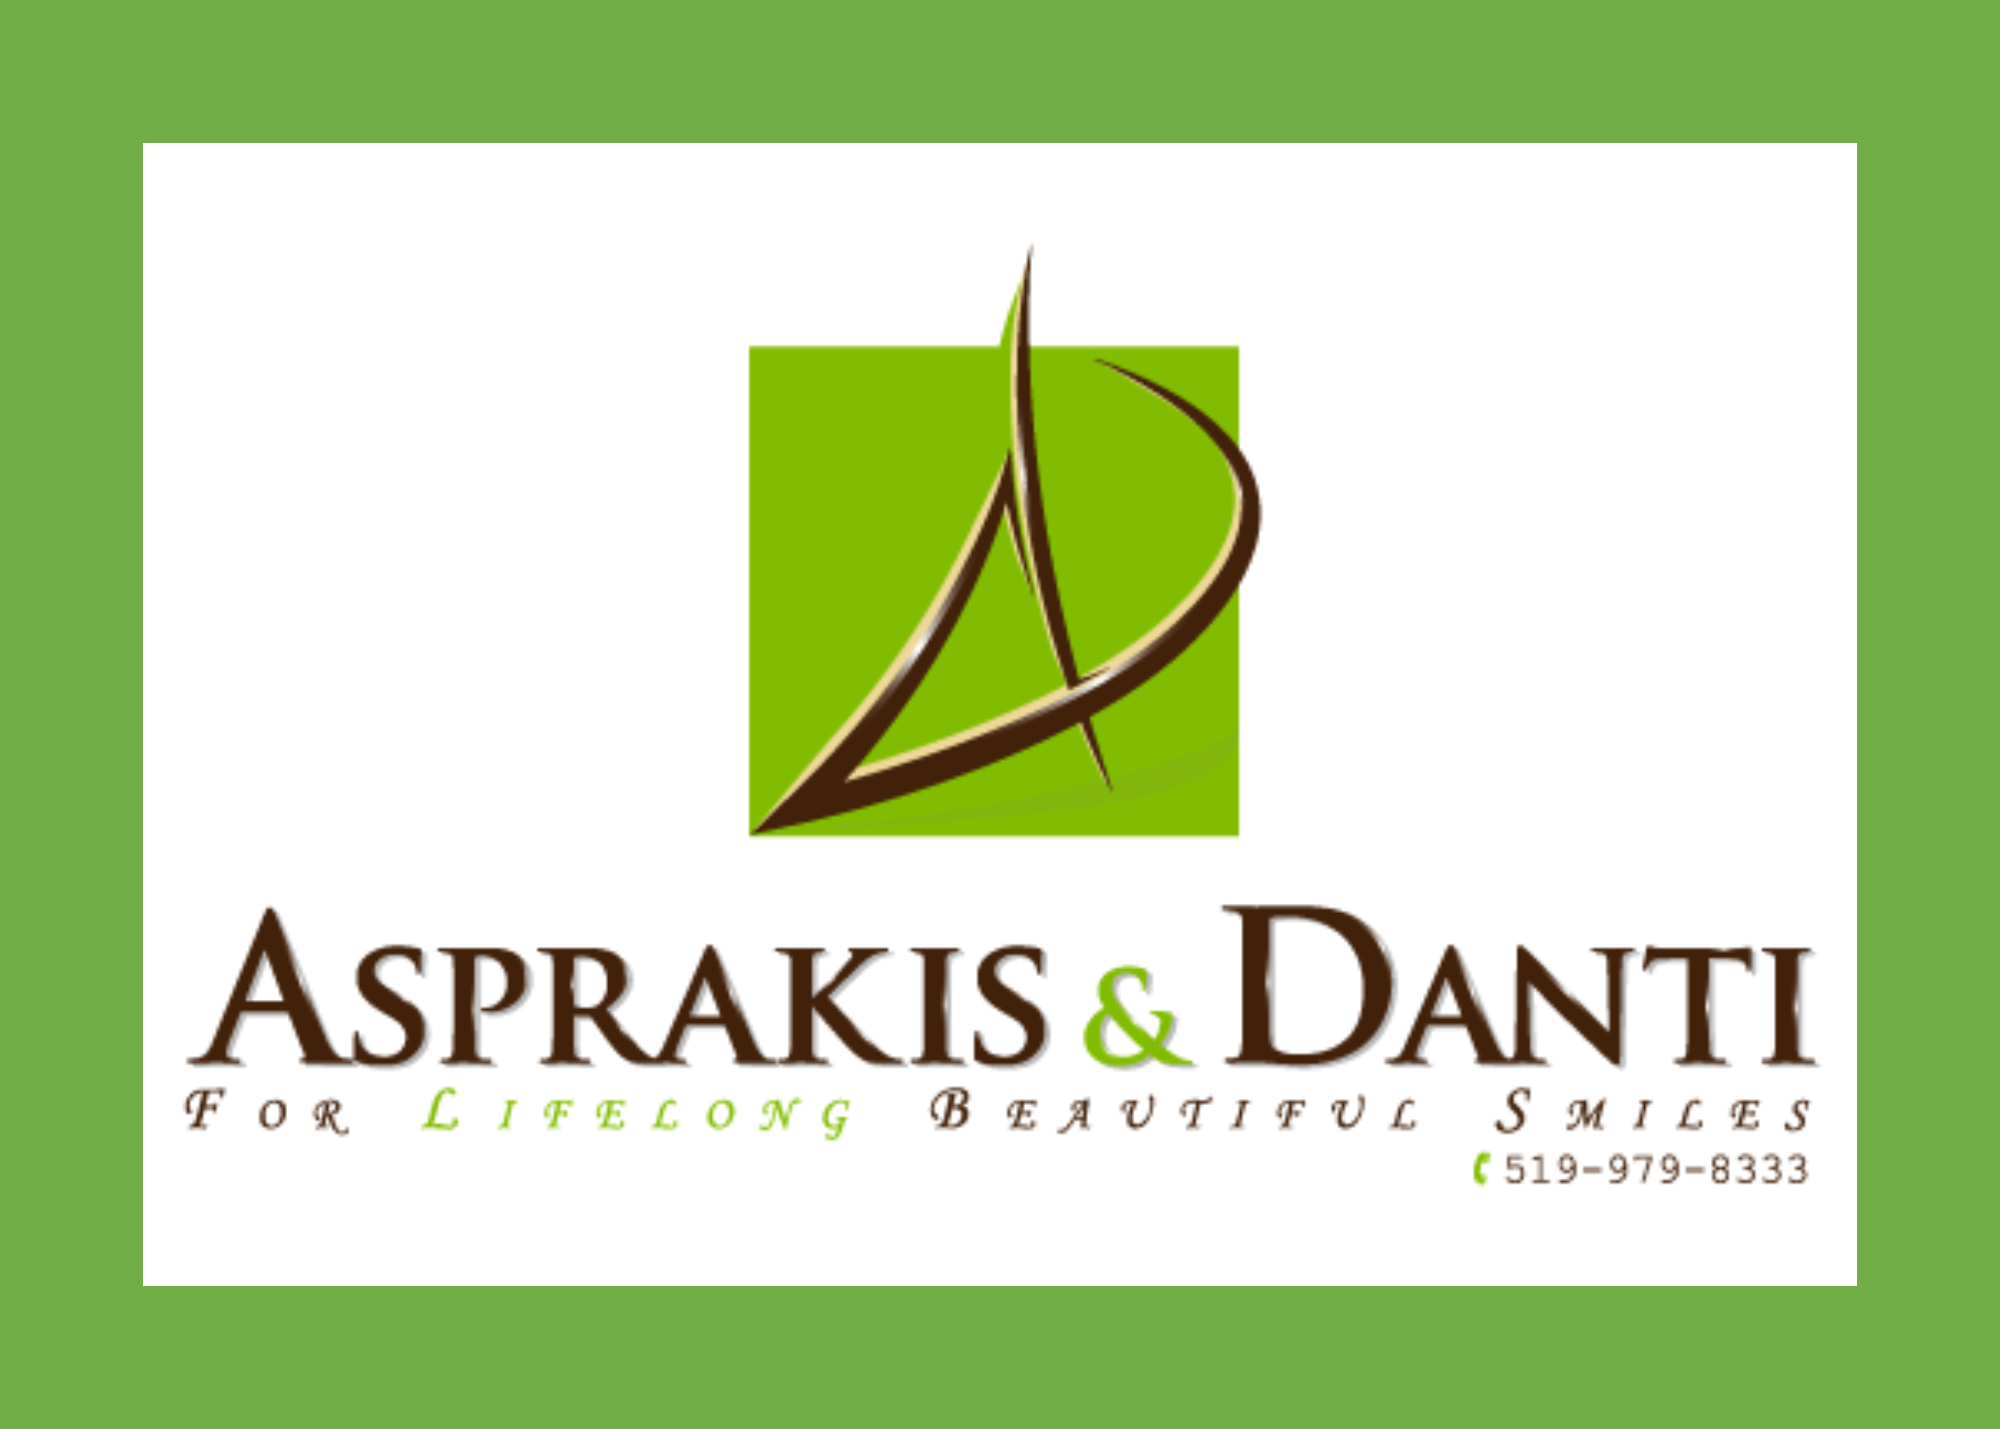 asprakis & danti logo